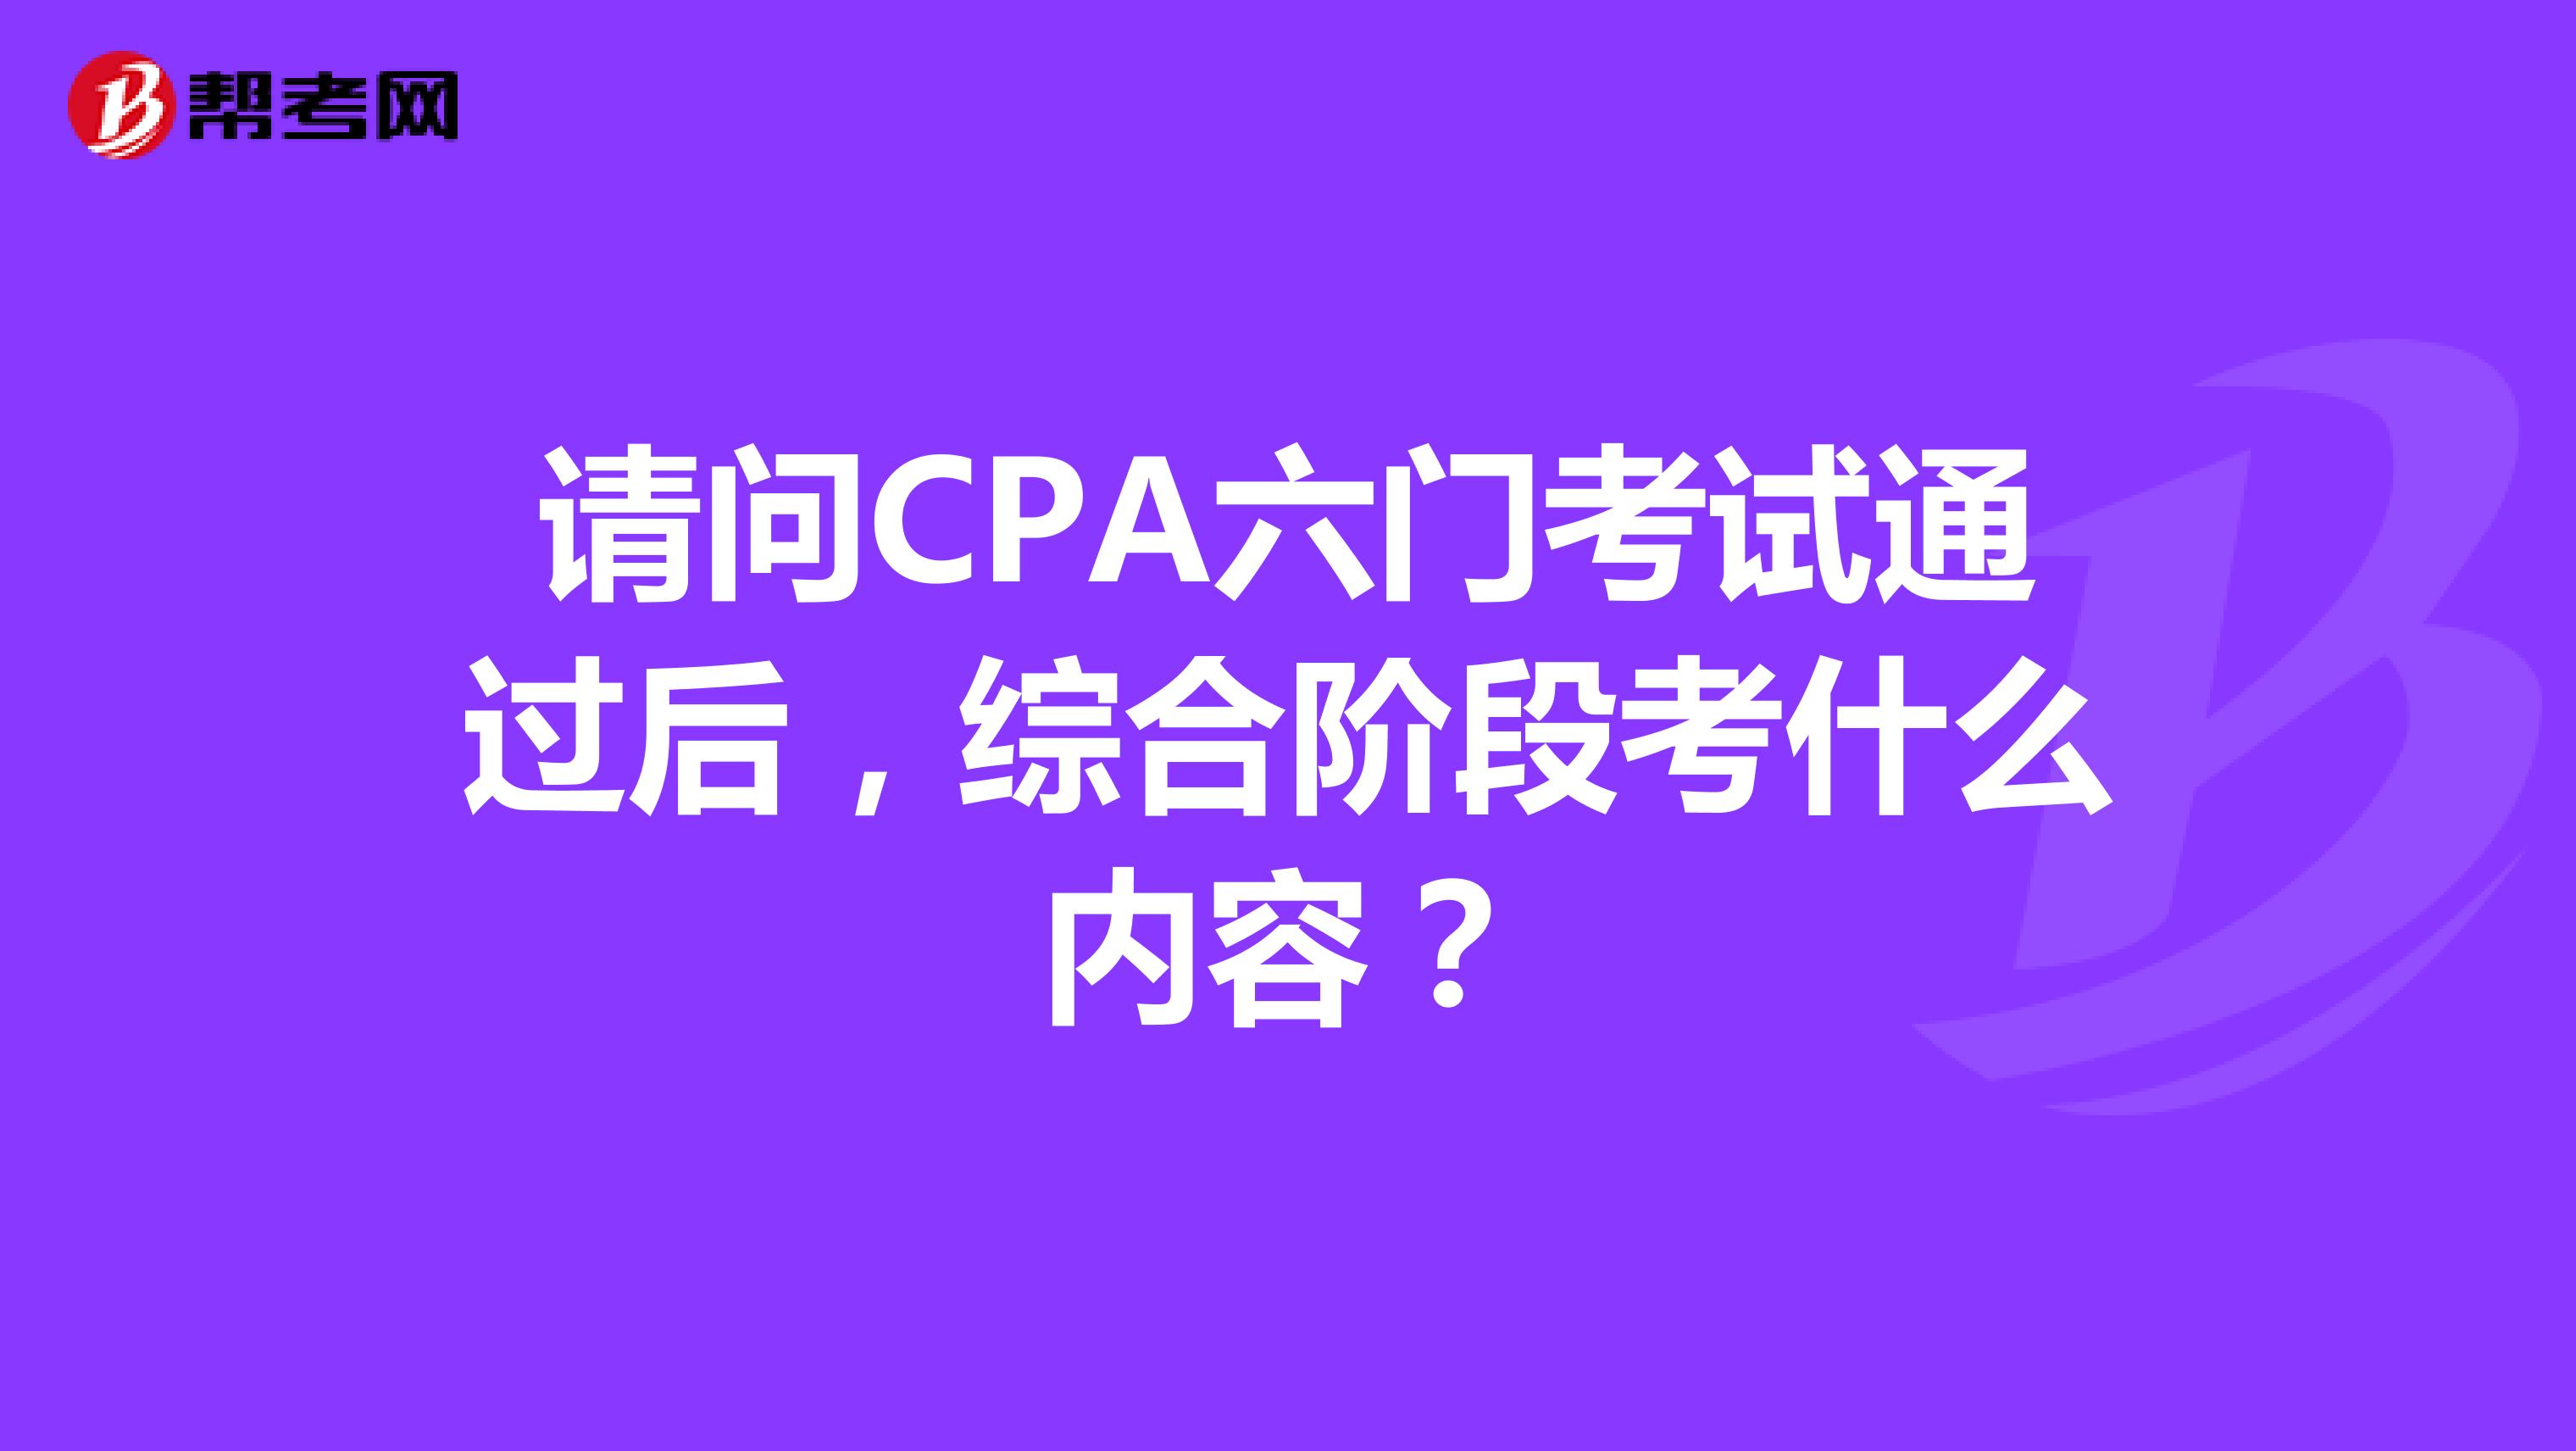 请问CPA六门考试通过后，综合阶段考什么内容？